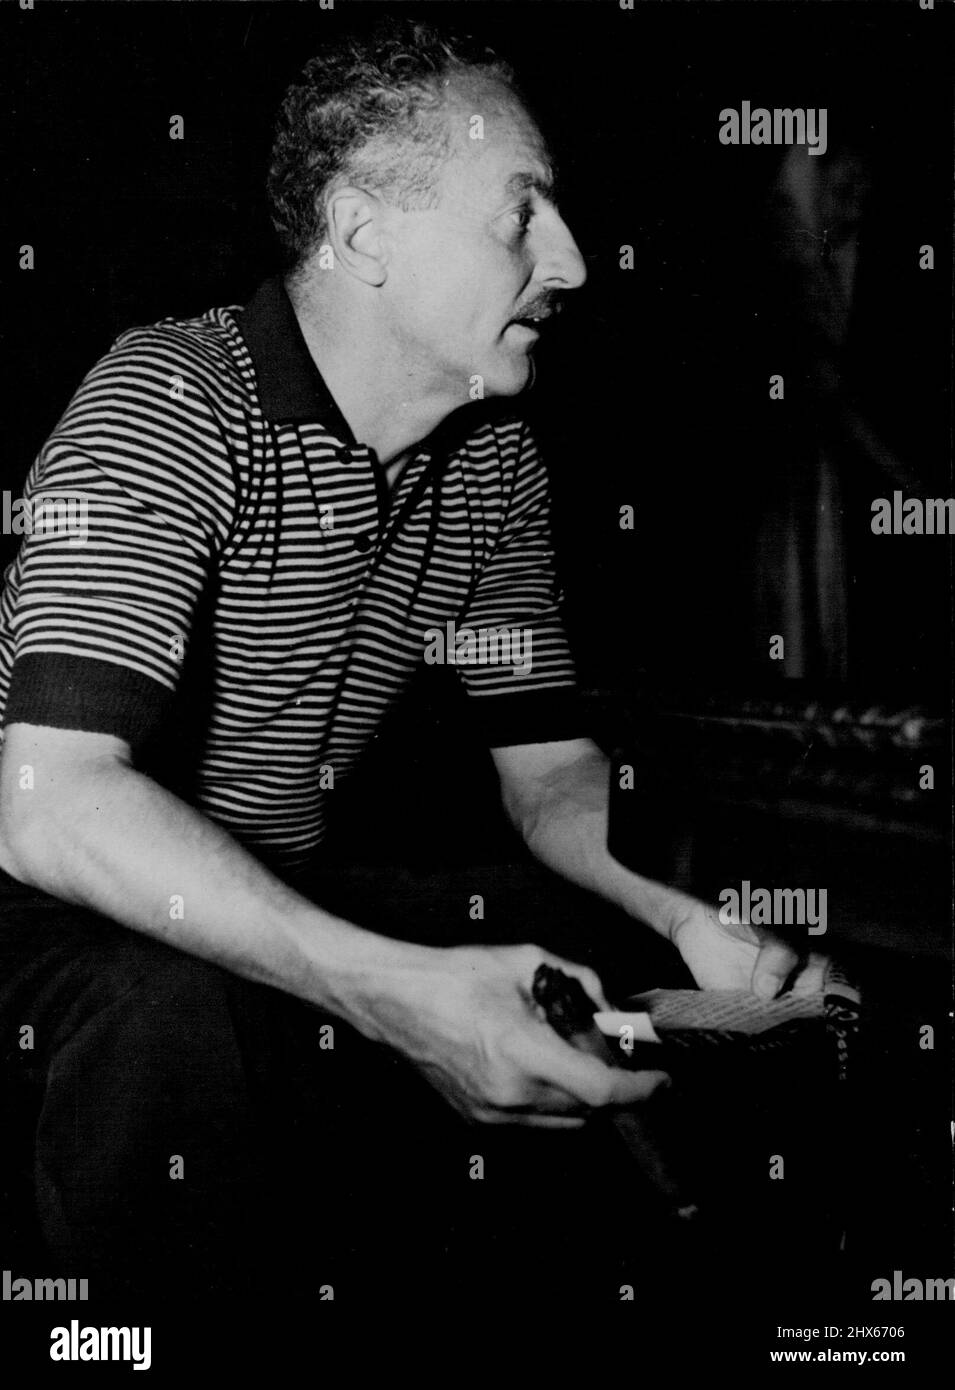 Darryl Zanuck - Chief of Twentieth-Century Fox, führender Produzent von Hollywood-Filmen. Trägt gerne Kurzarm-Trikots, raucht große Zigarren, hat eines der höchsten Einkommen der Welt. 20. Dezember 1948. (Foto von Kamera Drücken Sie). Stockfoto